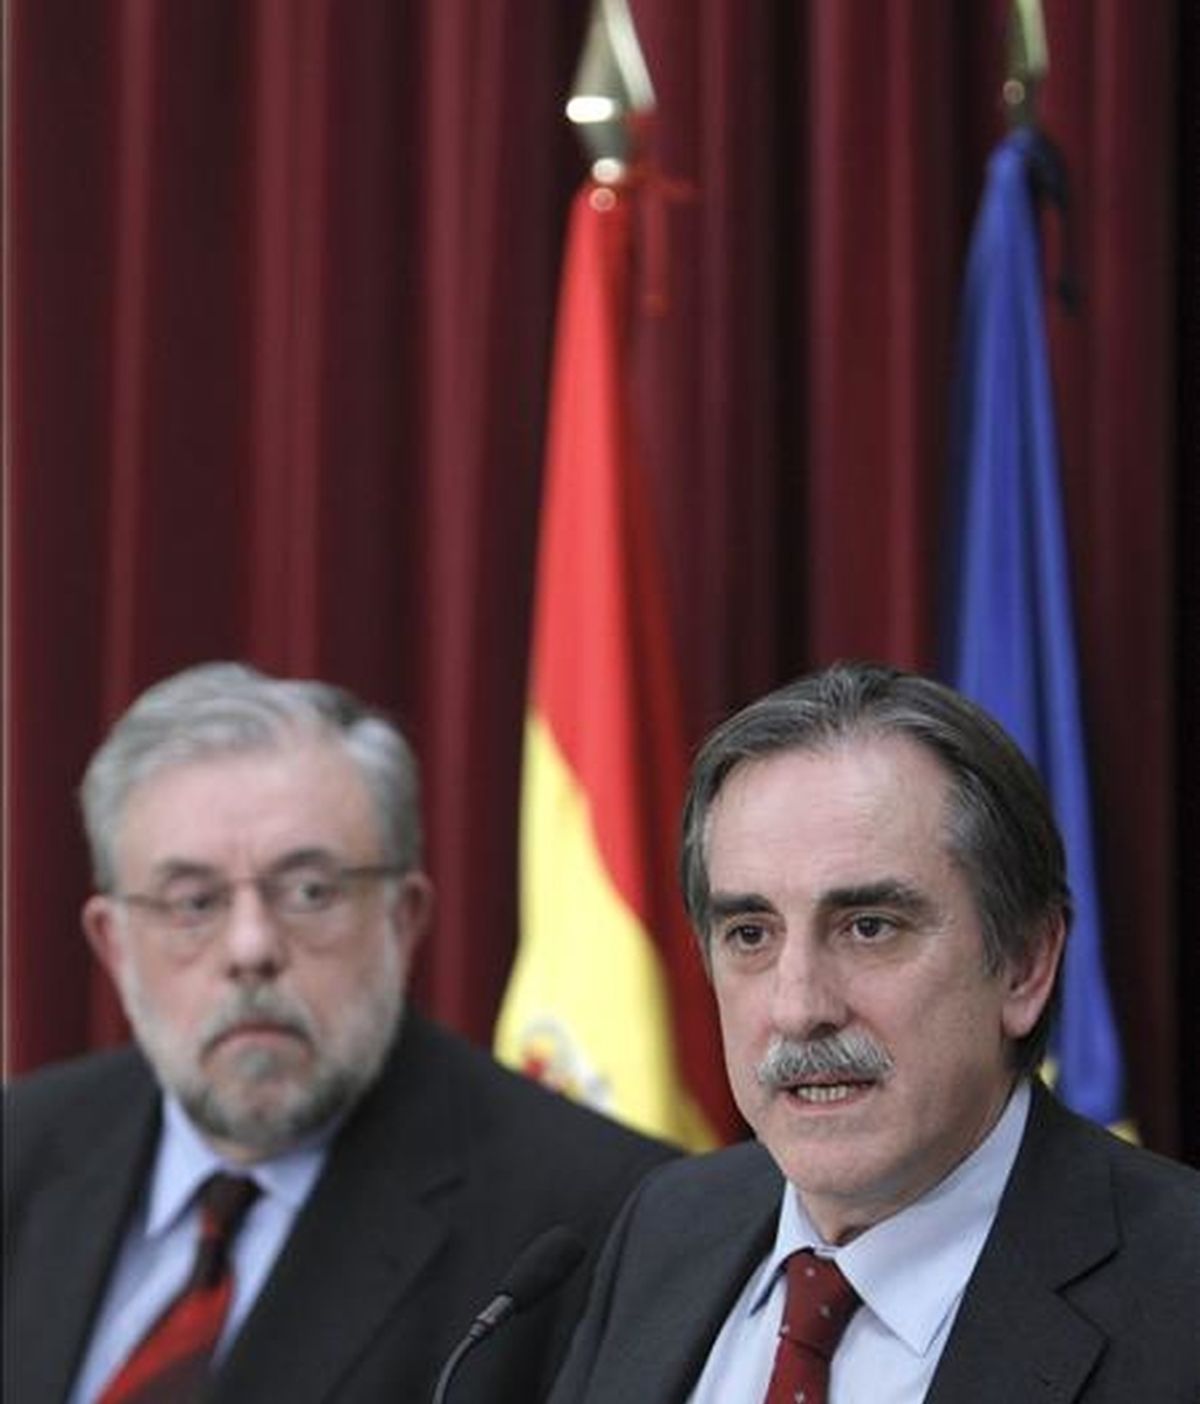 El ministro de Trabajo, Valeriano Gómez (d), acompañado por el secretario de Estado de Seguridad Social, Octavio Granado, realiza unas declaraciones. EFE/Archivo